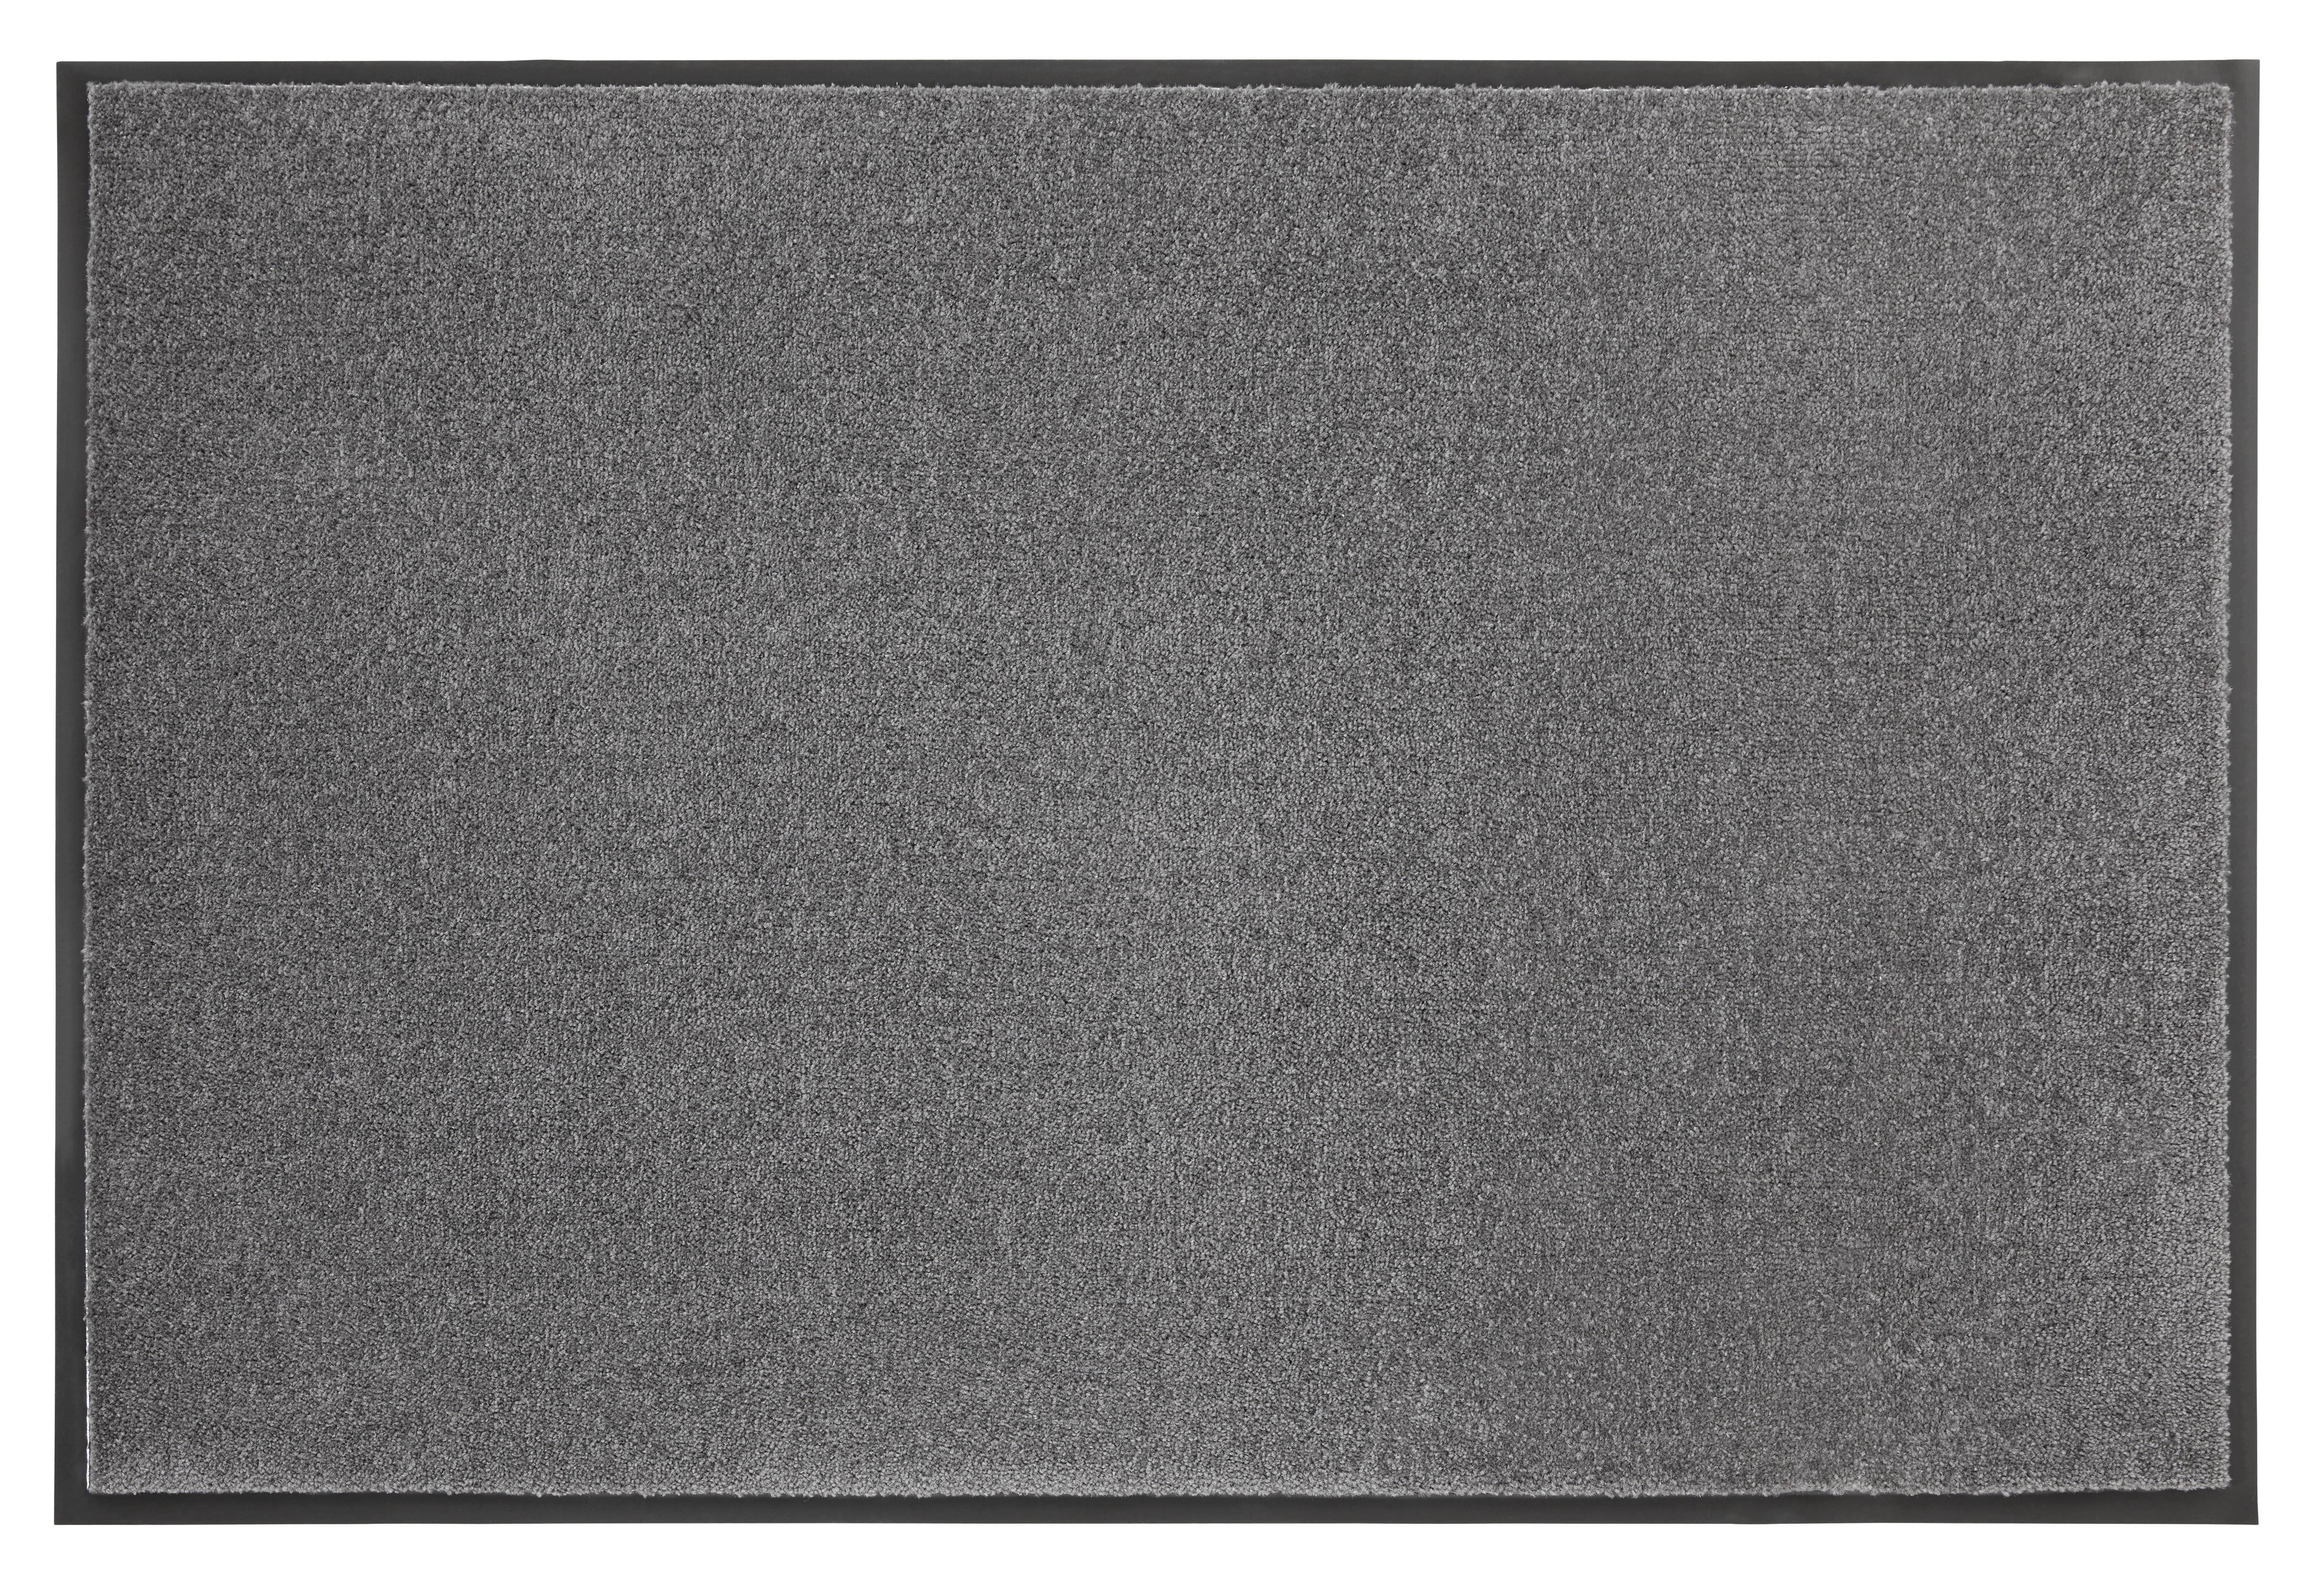 Dveřní Rohožka Eton 3, 80x120cm - antracitová, Konvenční, textil (80/120cm) - Modern Living